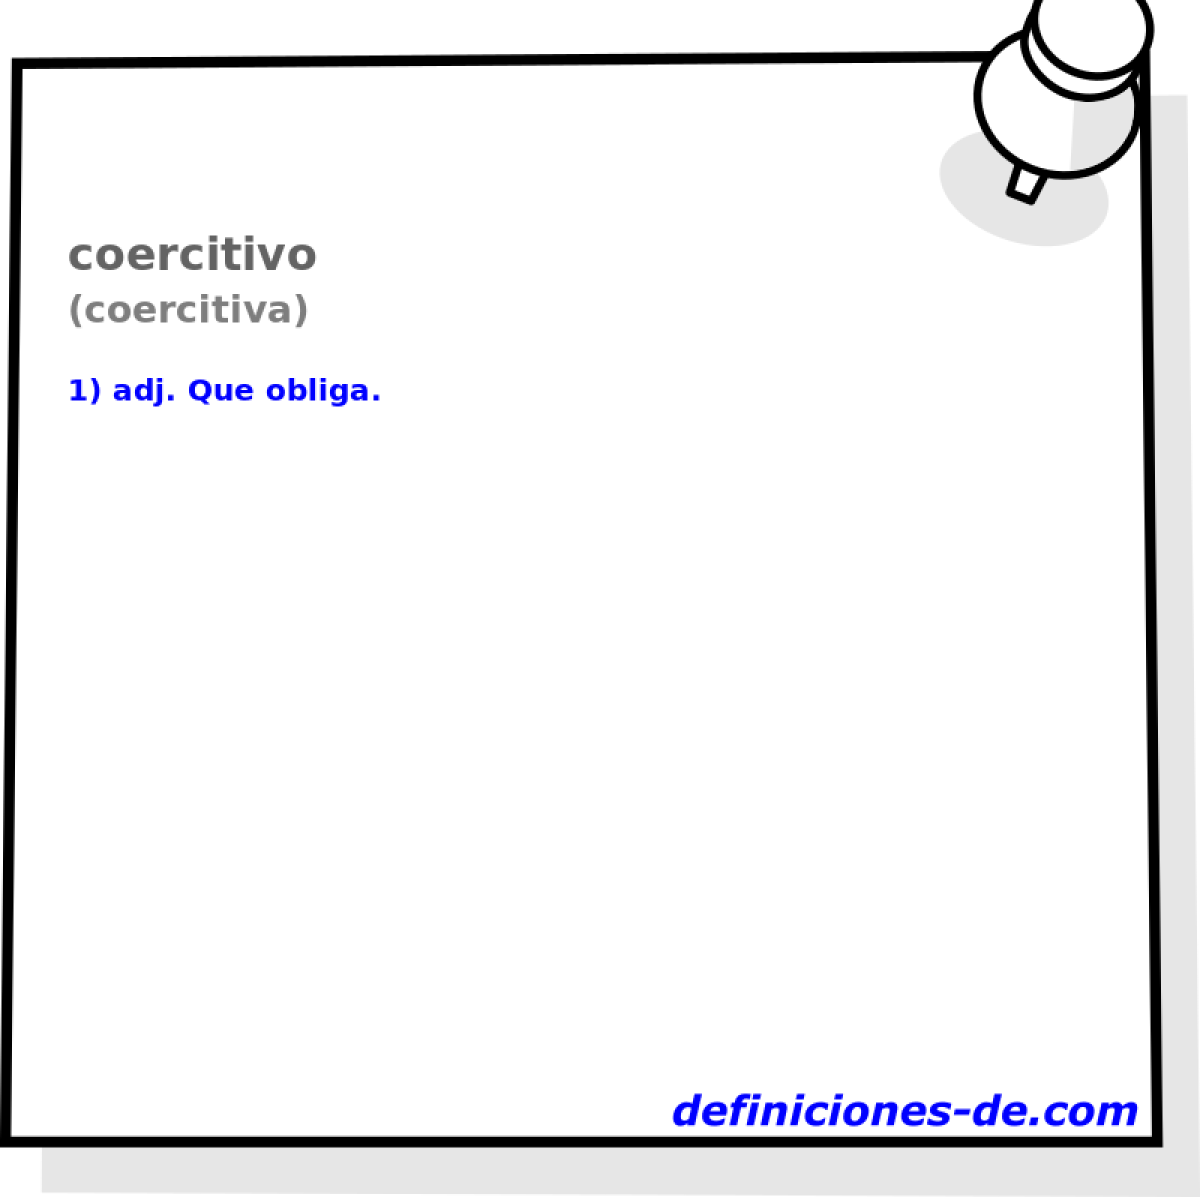 coercitivo (coercitiva)